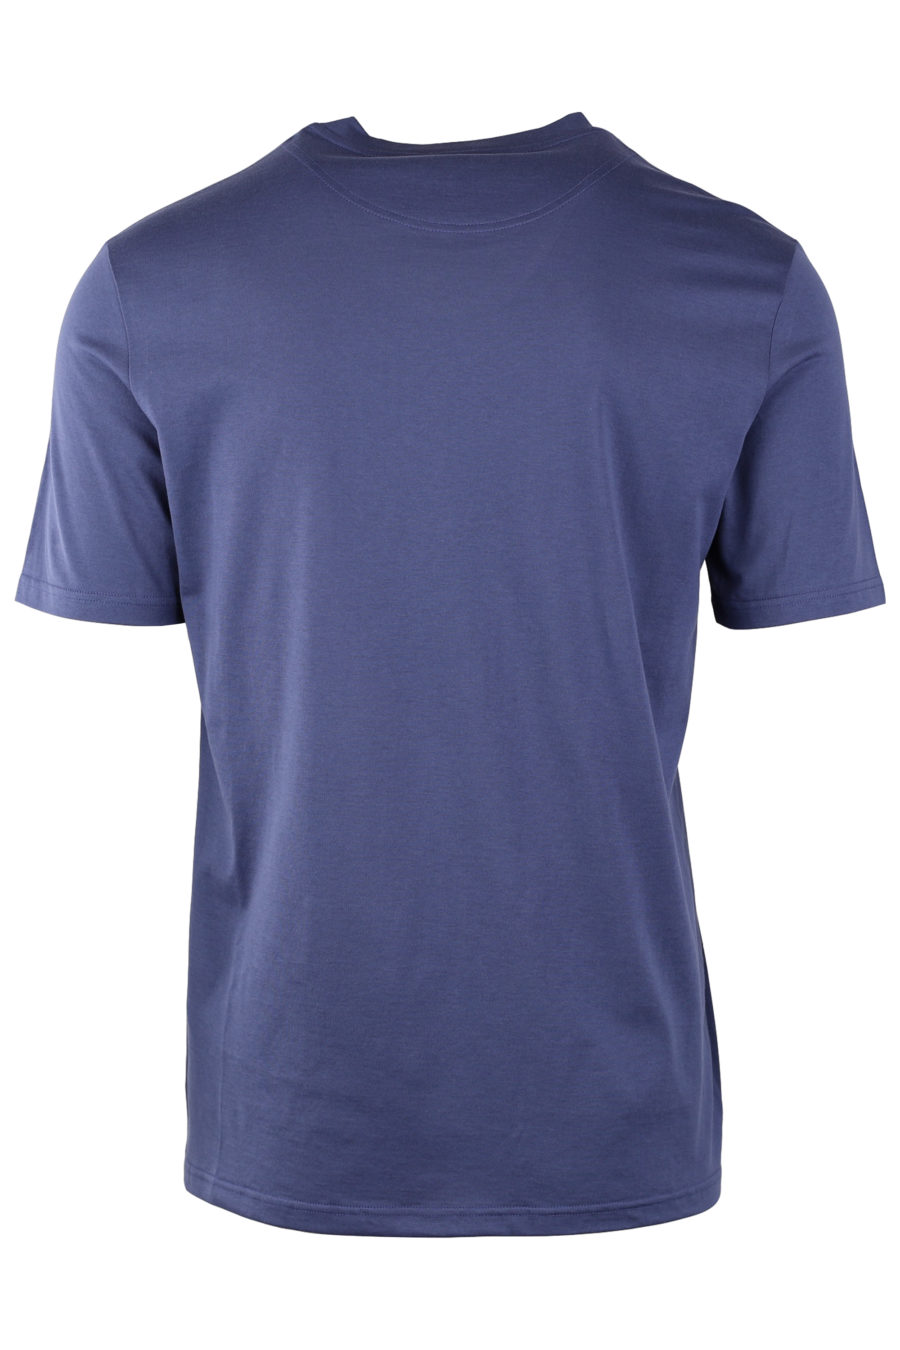 Camiseta interior azul con logo blanco bordado - 0071ef4f6645bf4deb82a233d8e025d25c5bb87d